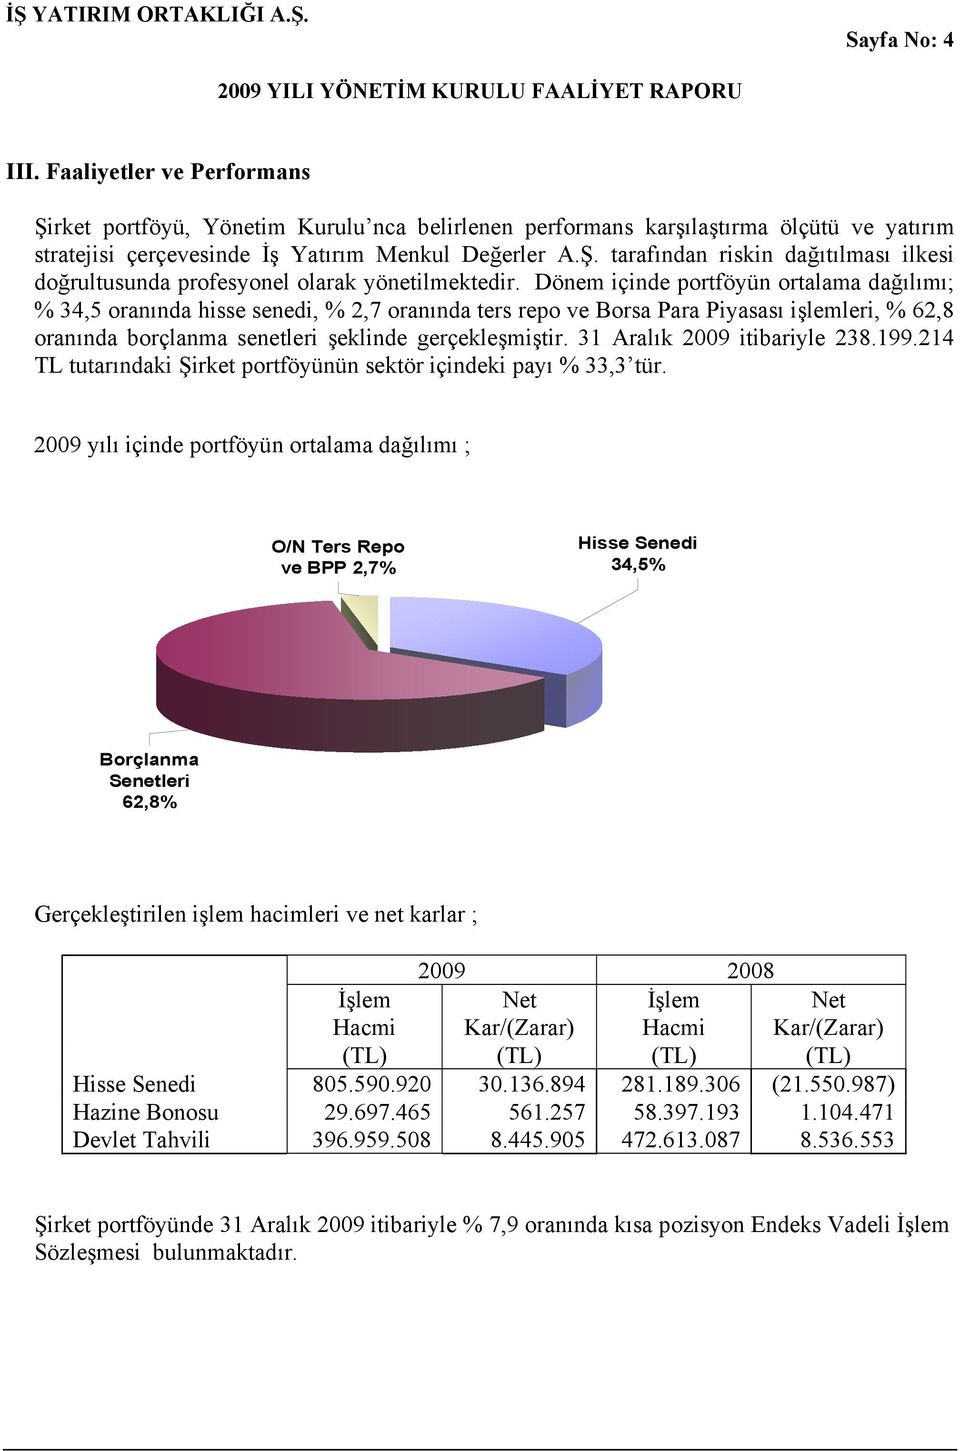 31 Aralık 2009 itibariyle 238.199.214 TL tutarındaki Şirket portföyünün sektör içindeki payı % 33,3 tür.